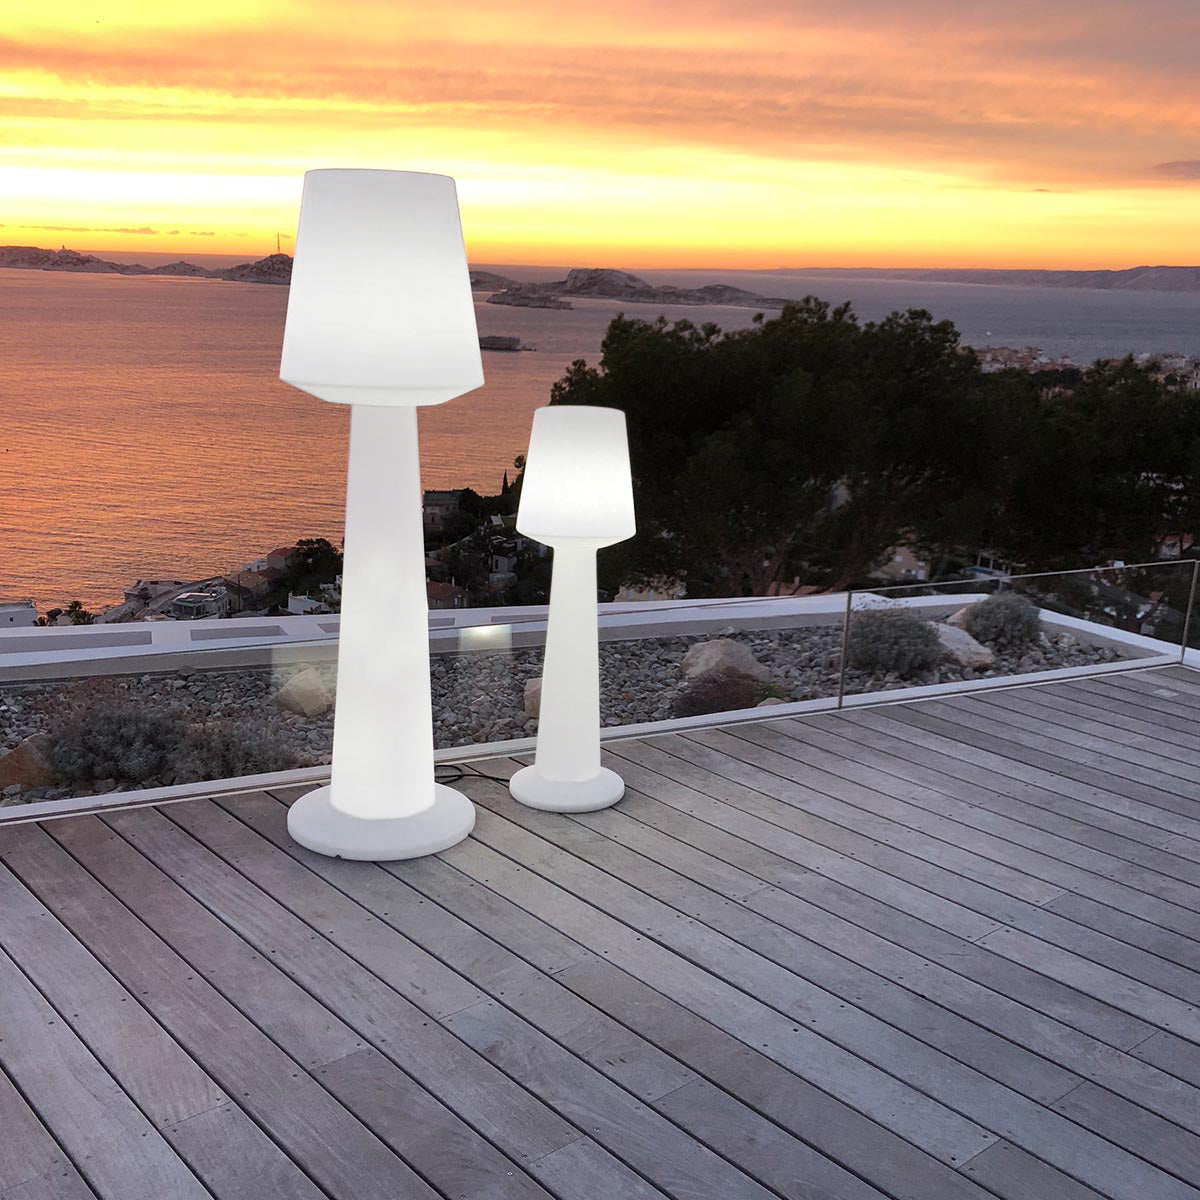 Designer wired light floor lamp for outdoor use powerful white LED lighting AUSTRAL H110cm E27 base